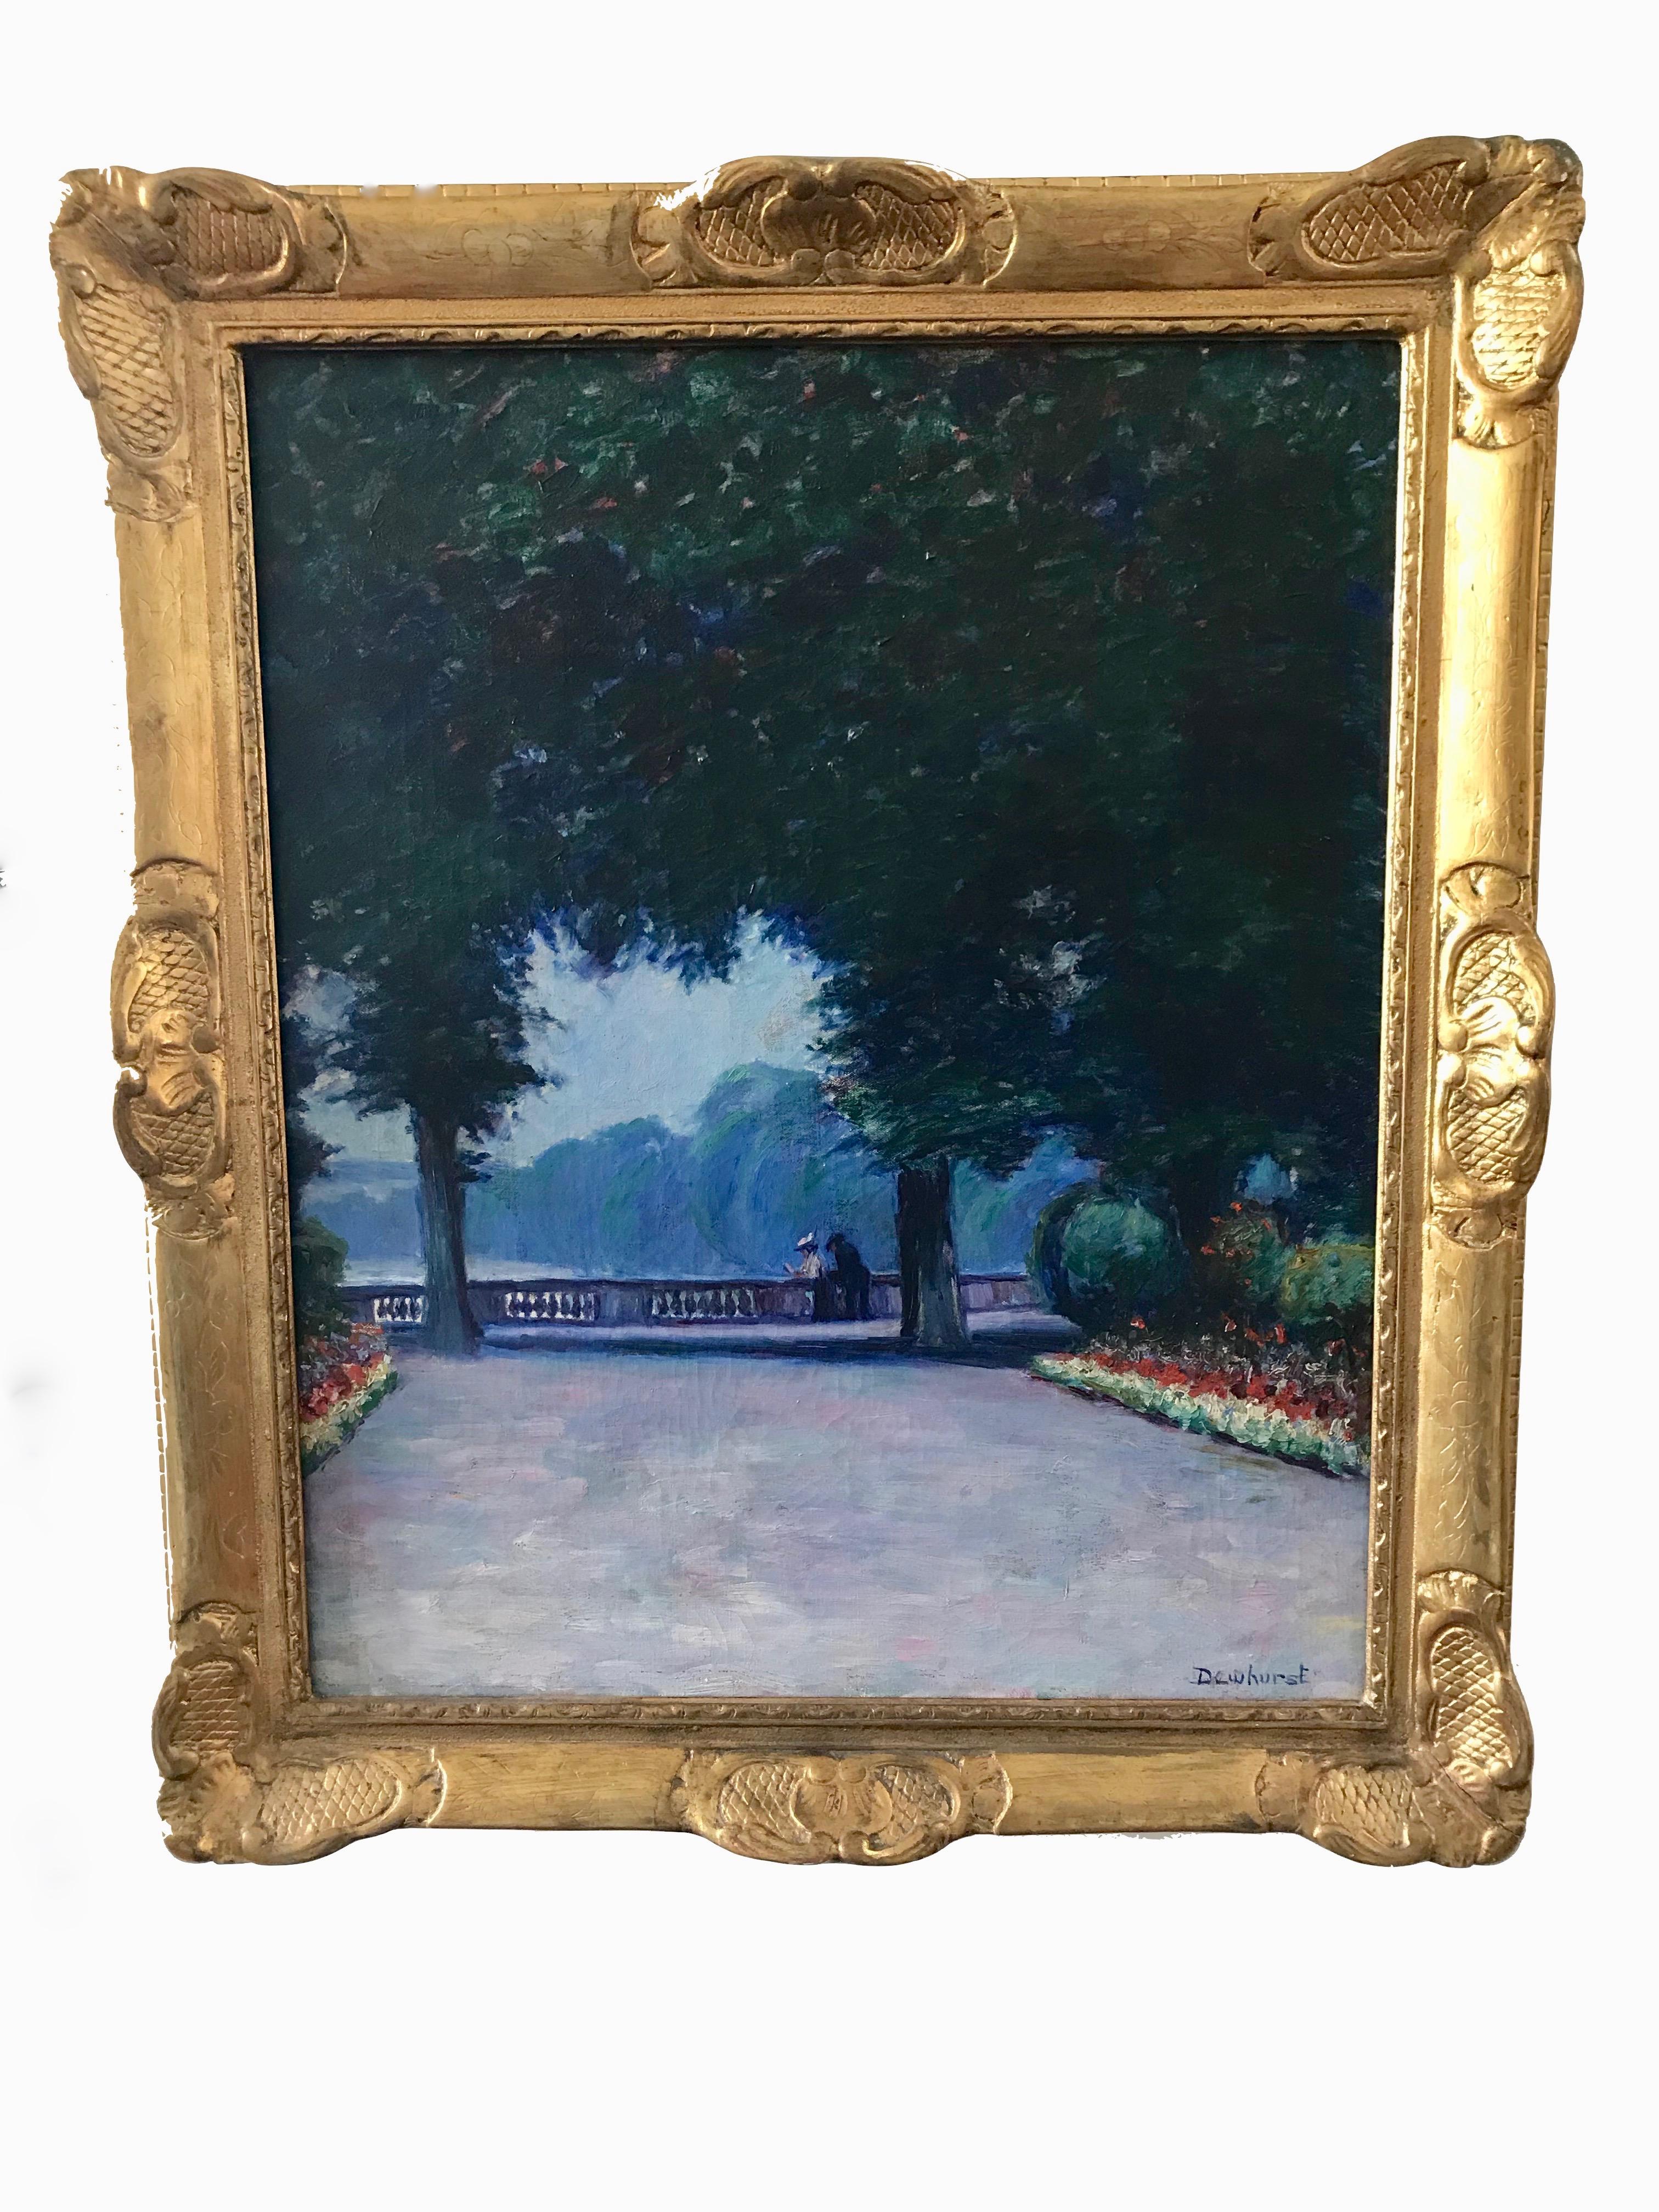 Dewhurst malte mehrere Gemälde des Parks, der das Schloss von Versailles umgibt. In diesem Beispiel lenken das dramatische Laub der Bäume und die Allee der Sommerblumen den Blick auf ein Paar, das sich auf der Balustrade unterhält.

Wynford Dewhurst